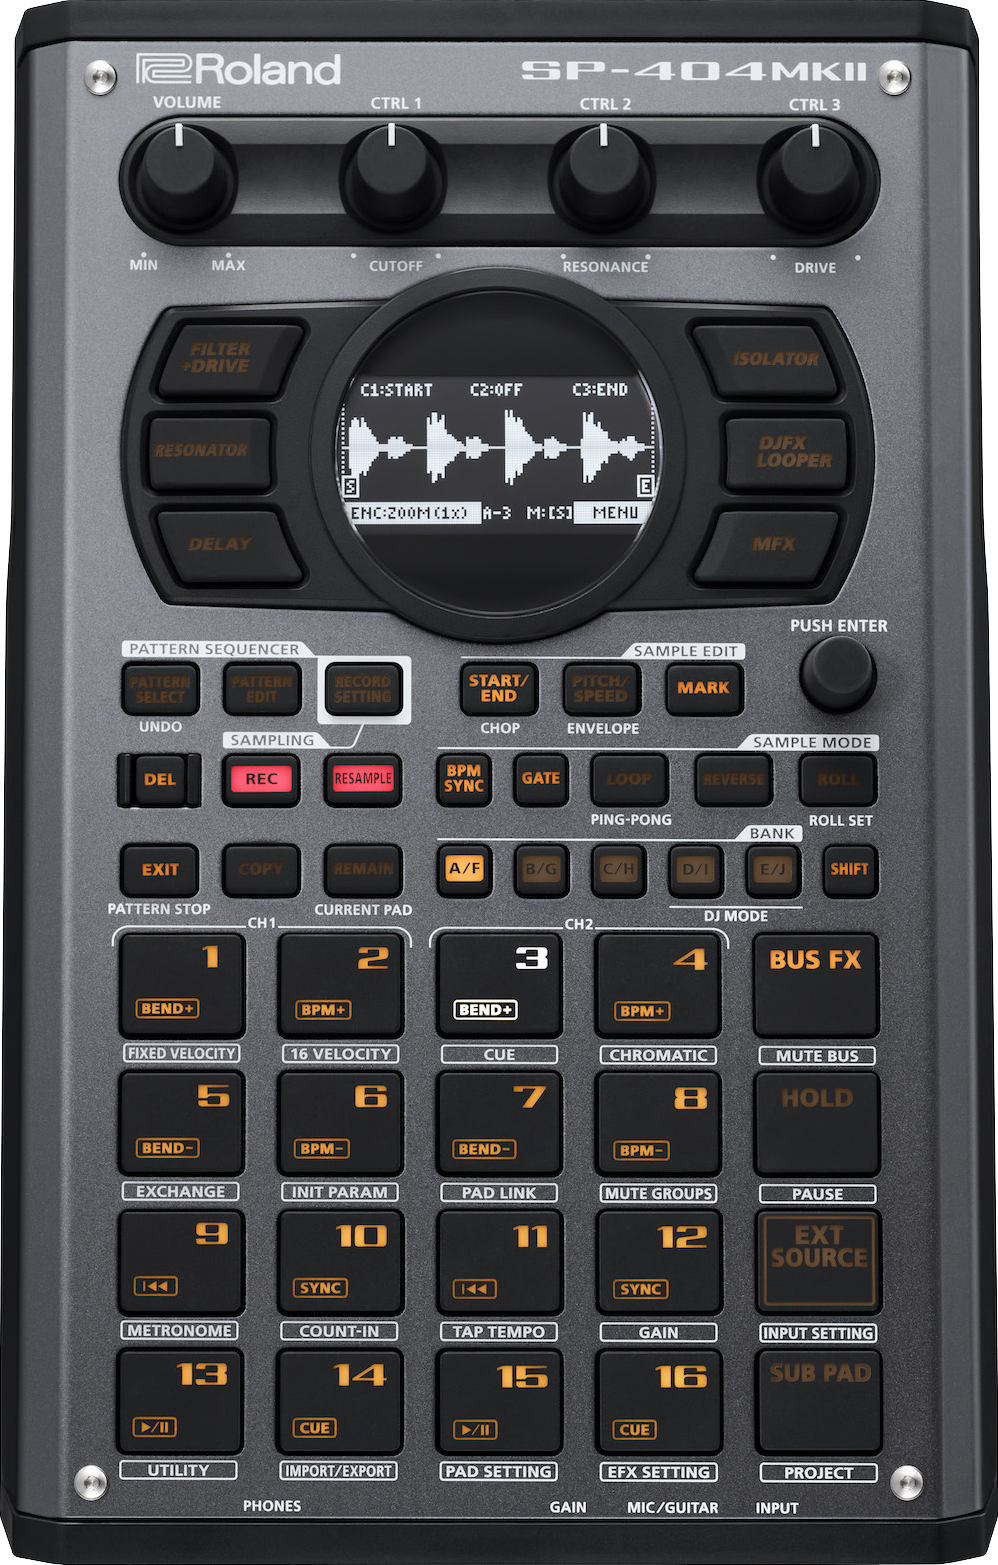 Roland SP-404MK2